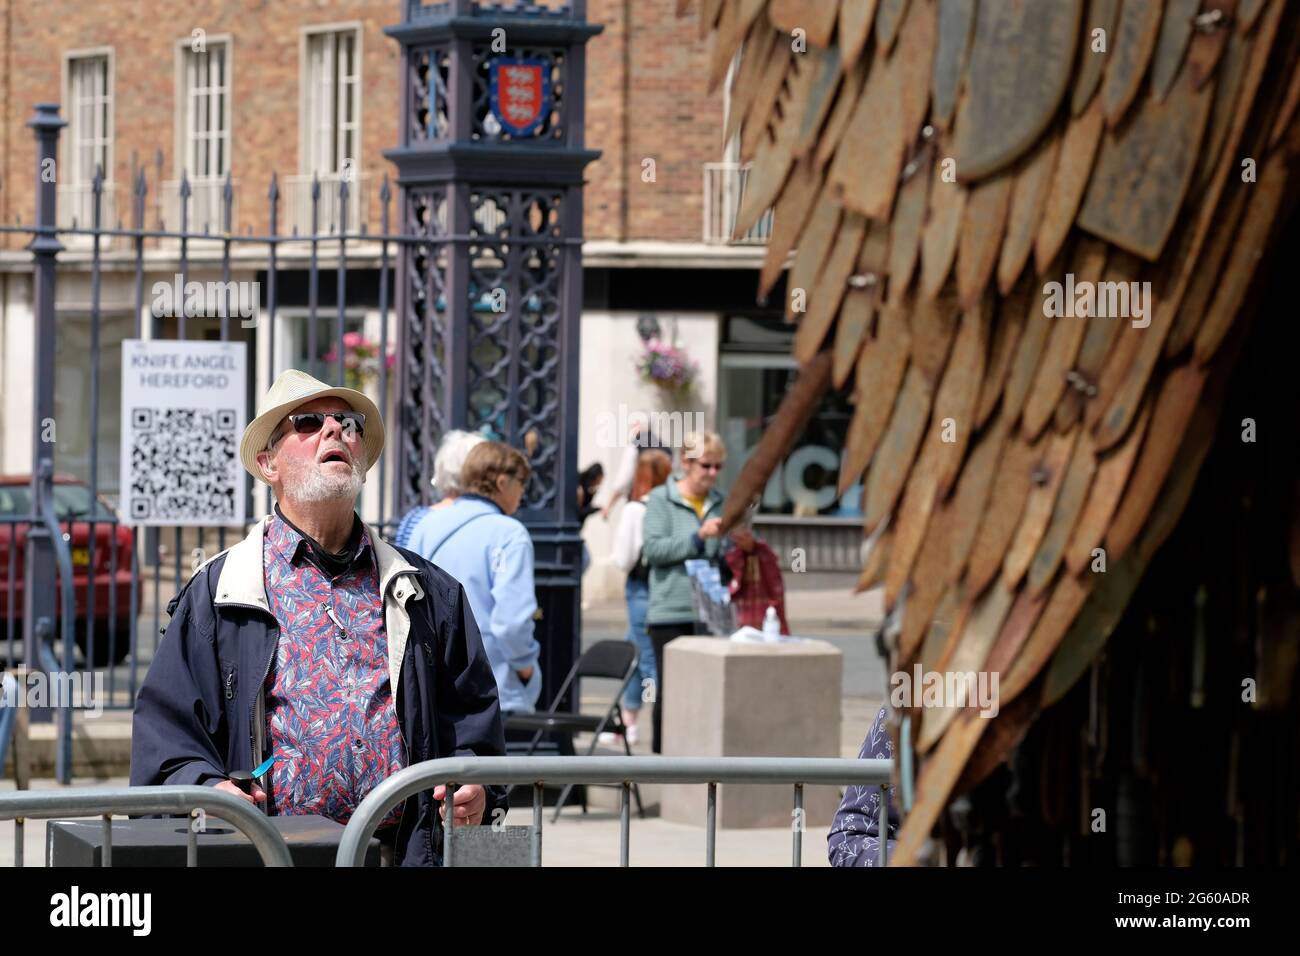 Un visiteur regarde l'Ange des couteaux à Hereford - la sculpture de 27 pieds de haut est composée de 100,000 couteaux confisqués par le sculpteur Alfie Bradley. Banque D'Images